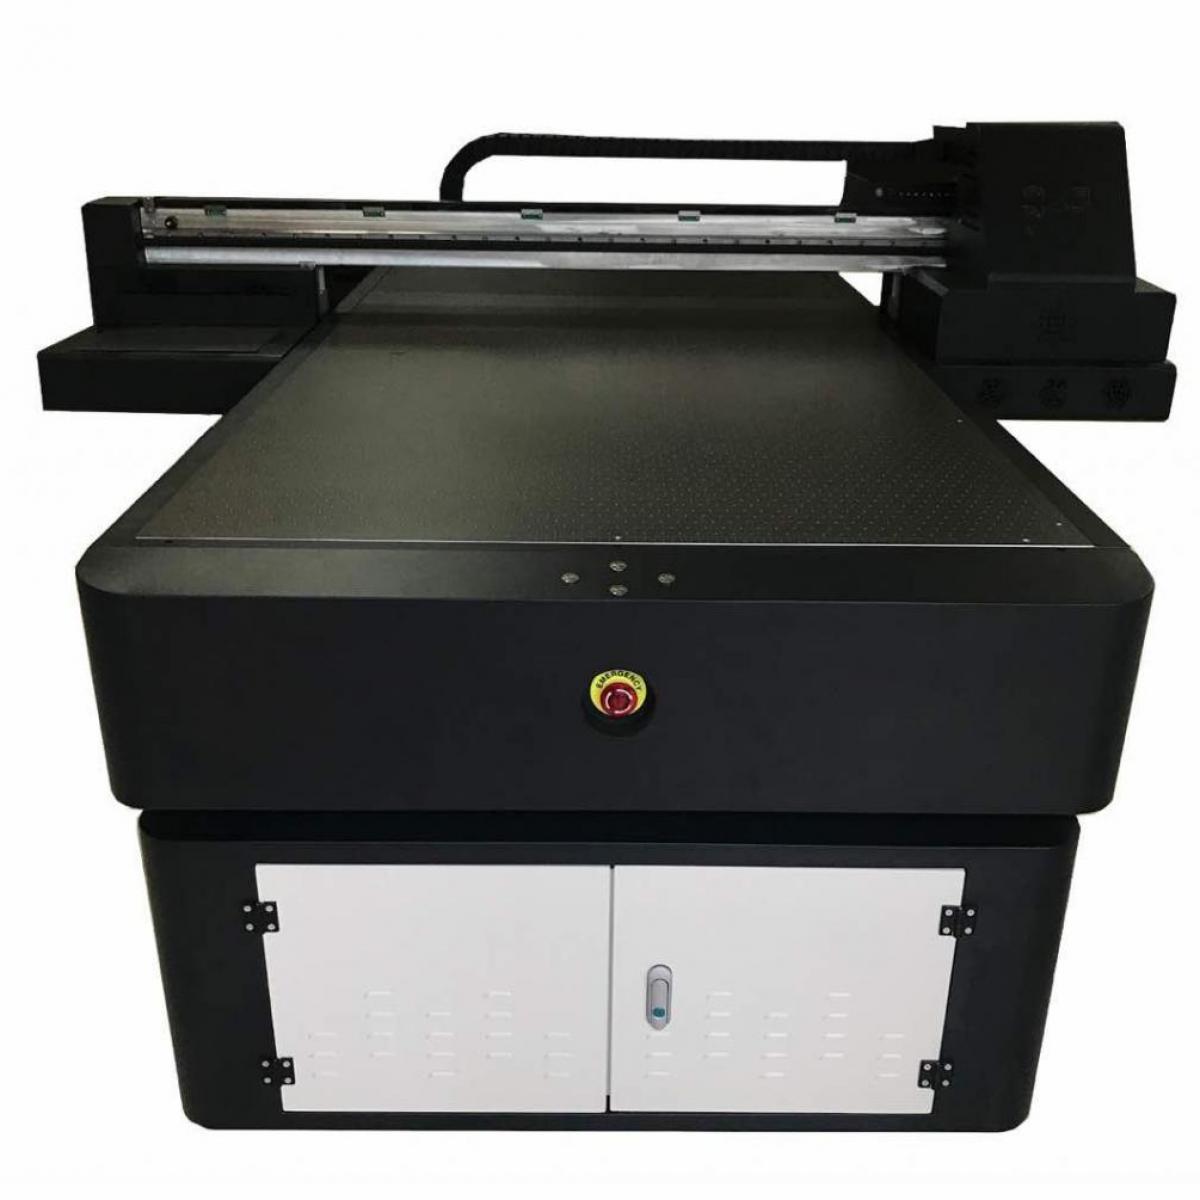 Принтер планшетной печати. Optimus 4575uv УФ принтер. УФ принтер a2 UV Flatbed Printer UF-600d. Freecolor FC-uv1015. Планшетный УФ принтер UD 25l6 BKV.